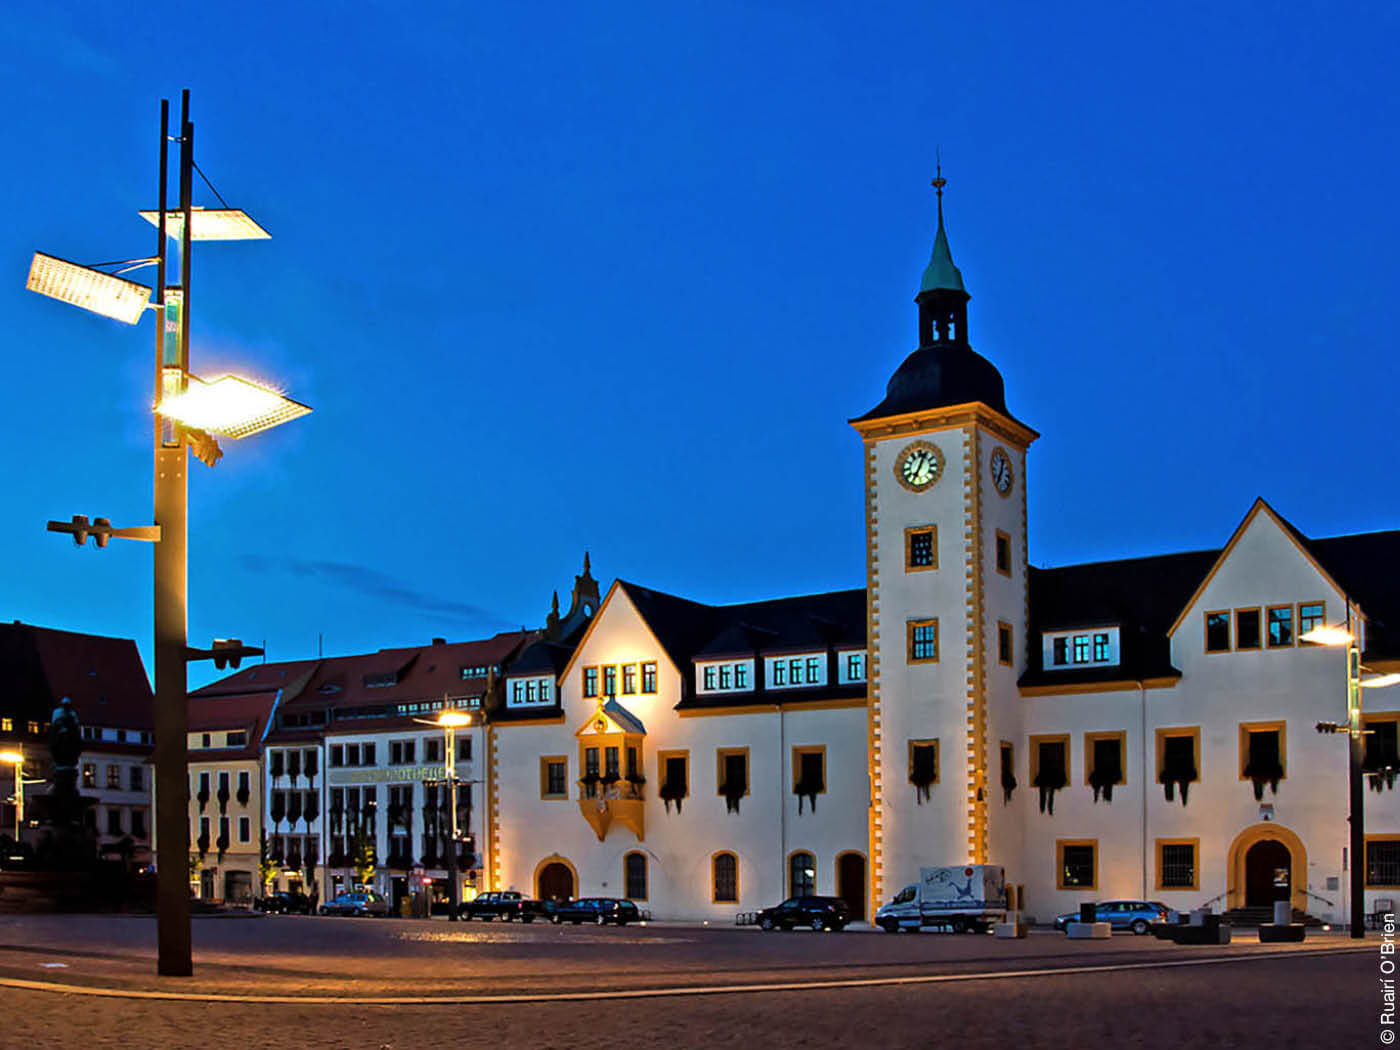 Marktplatz und Rathaus Freiberg mit speziller Straßenlaterne